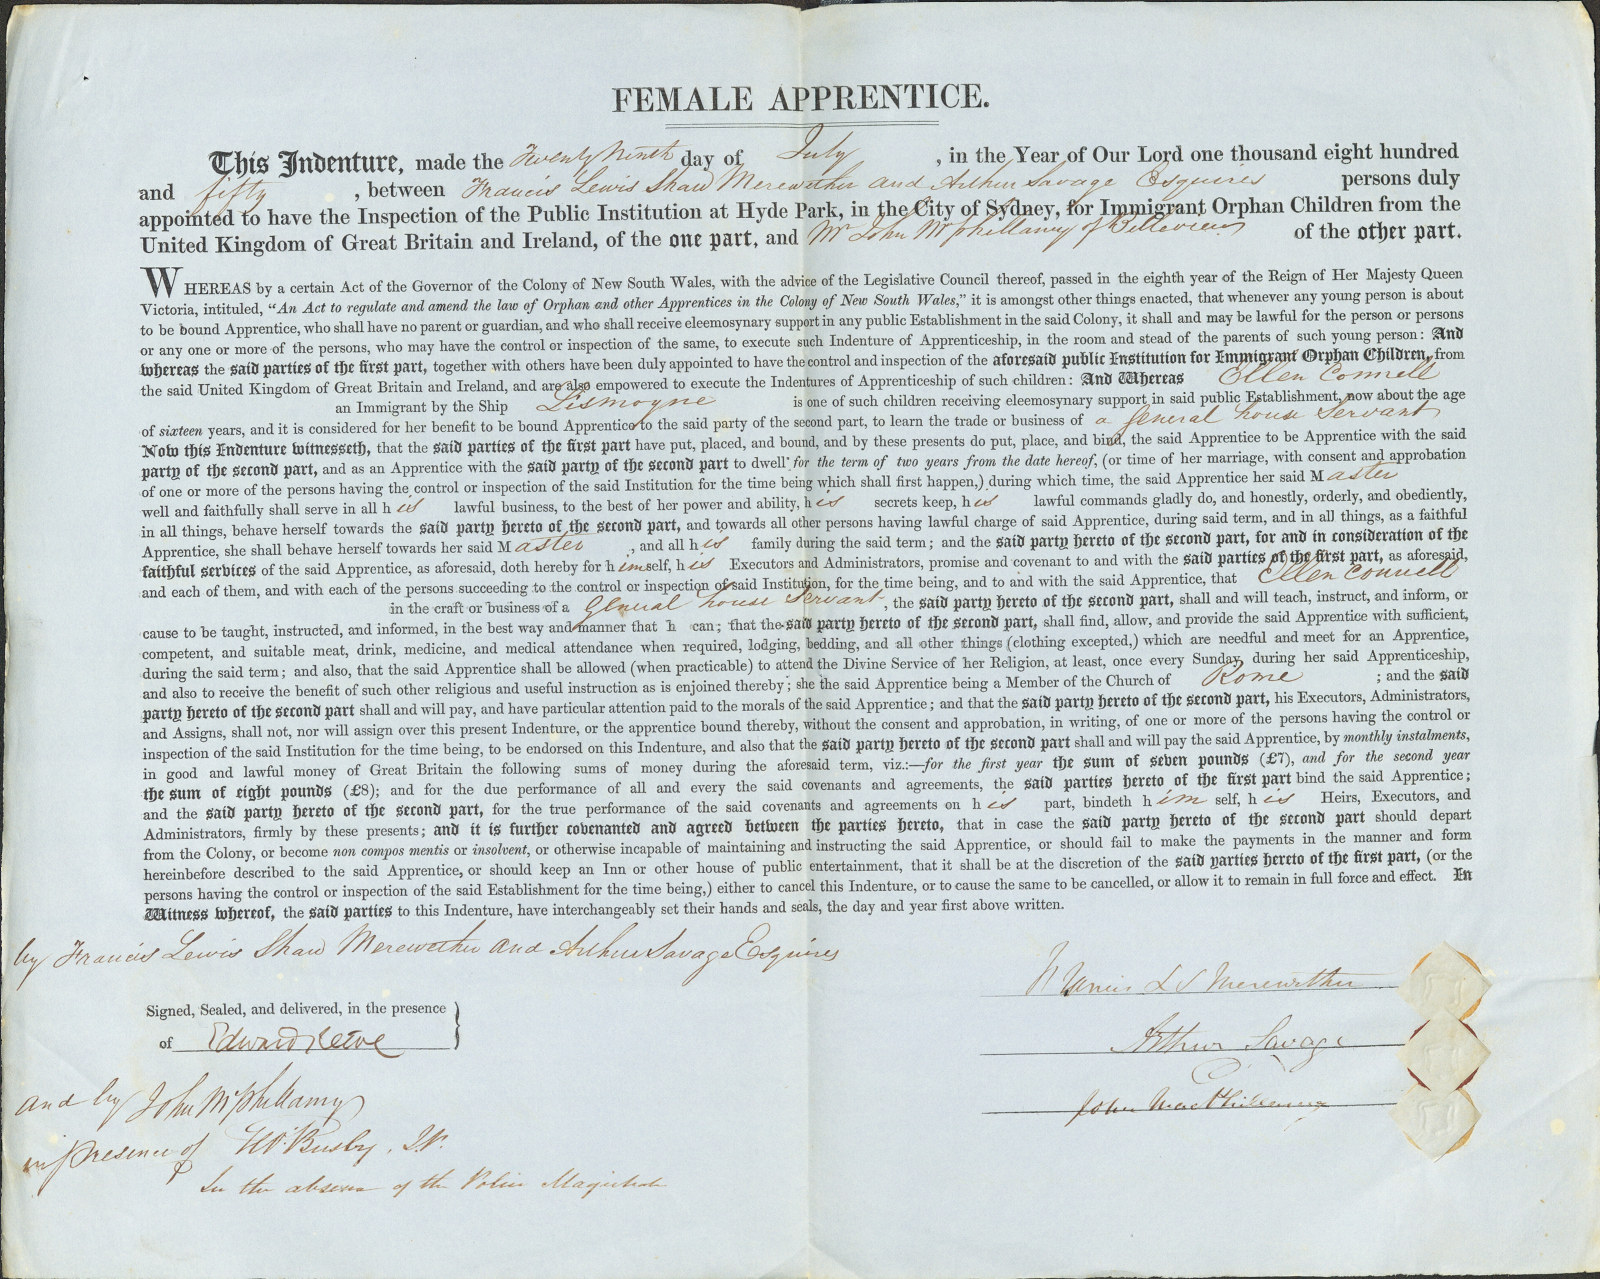 Female apprentice indenture for Ellen Connell, 29 July 1850